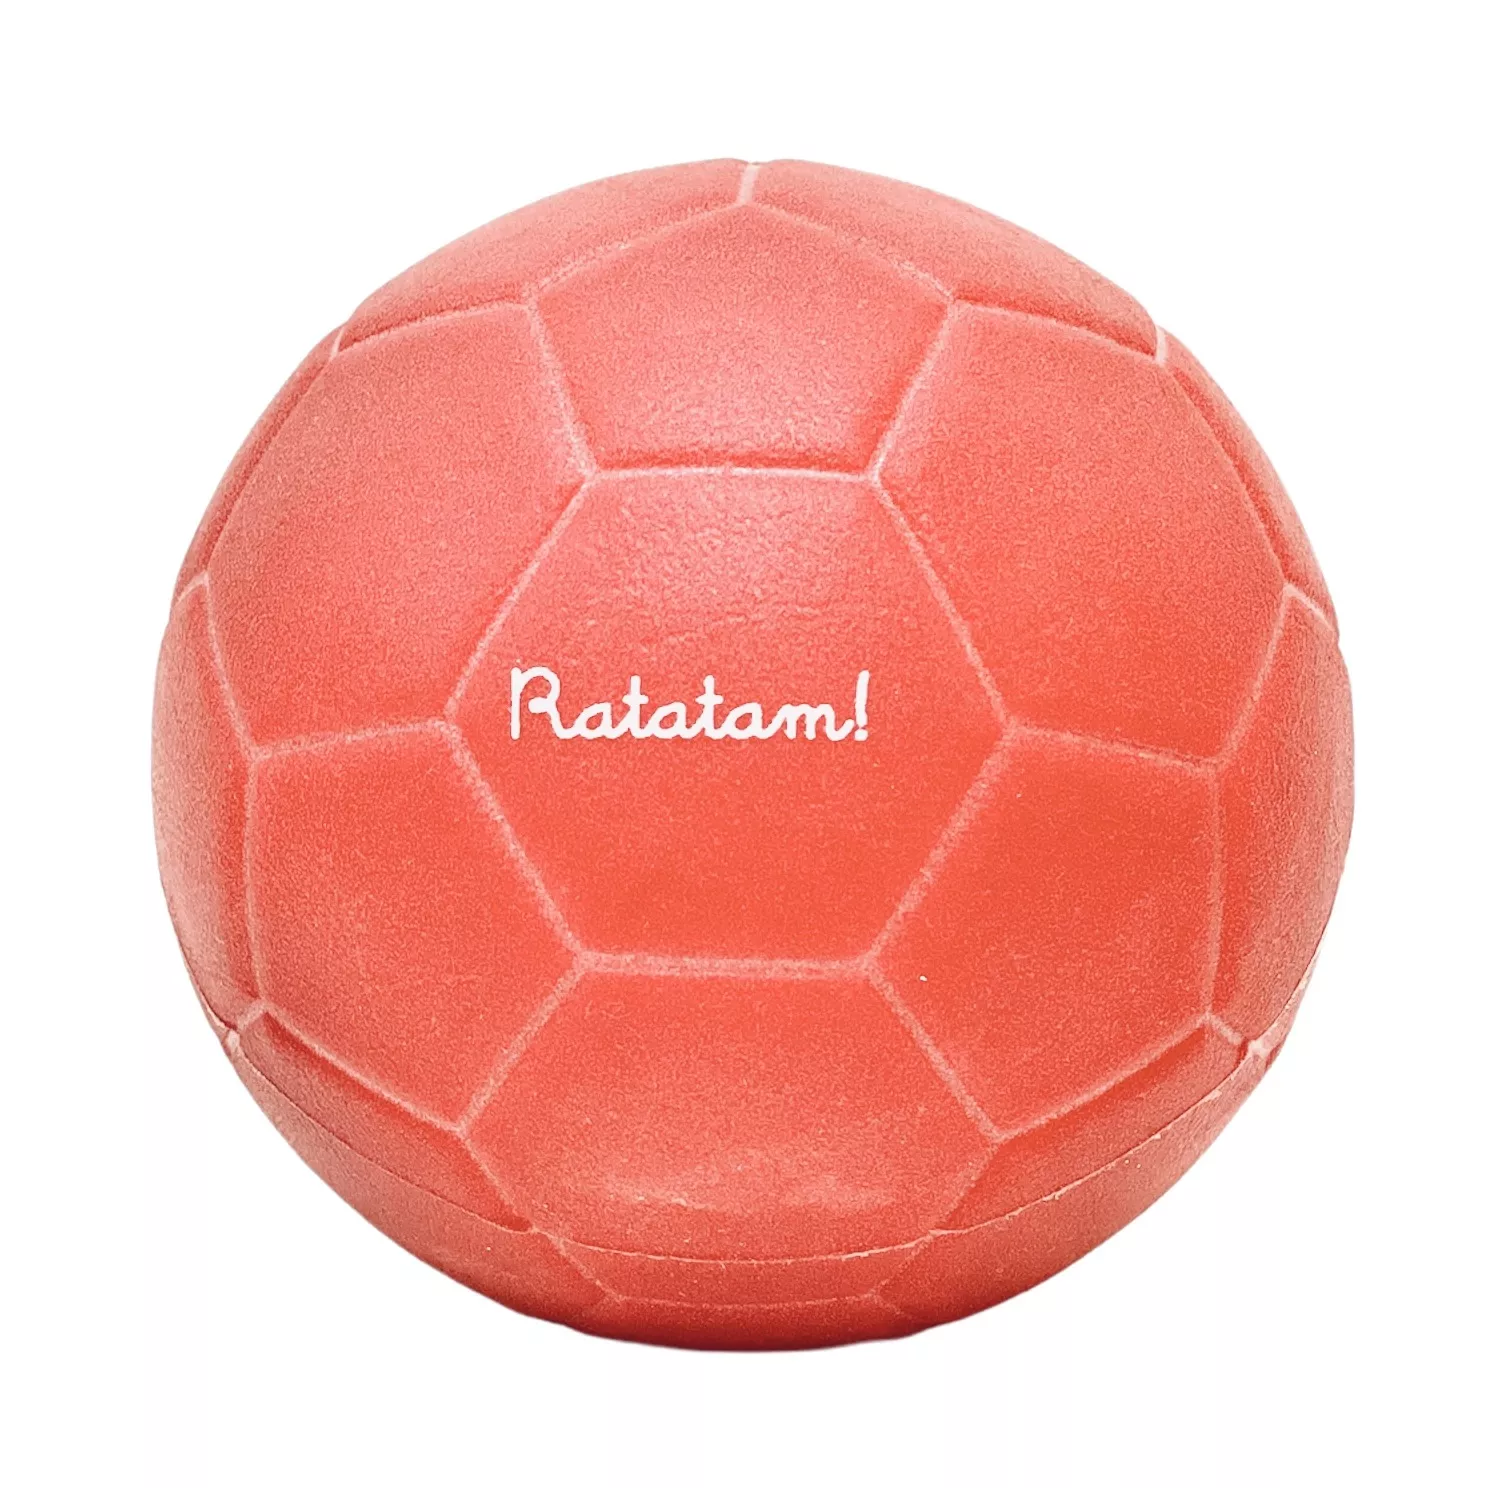 Ballon Hand 14cm - Ratatam Site Officiel